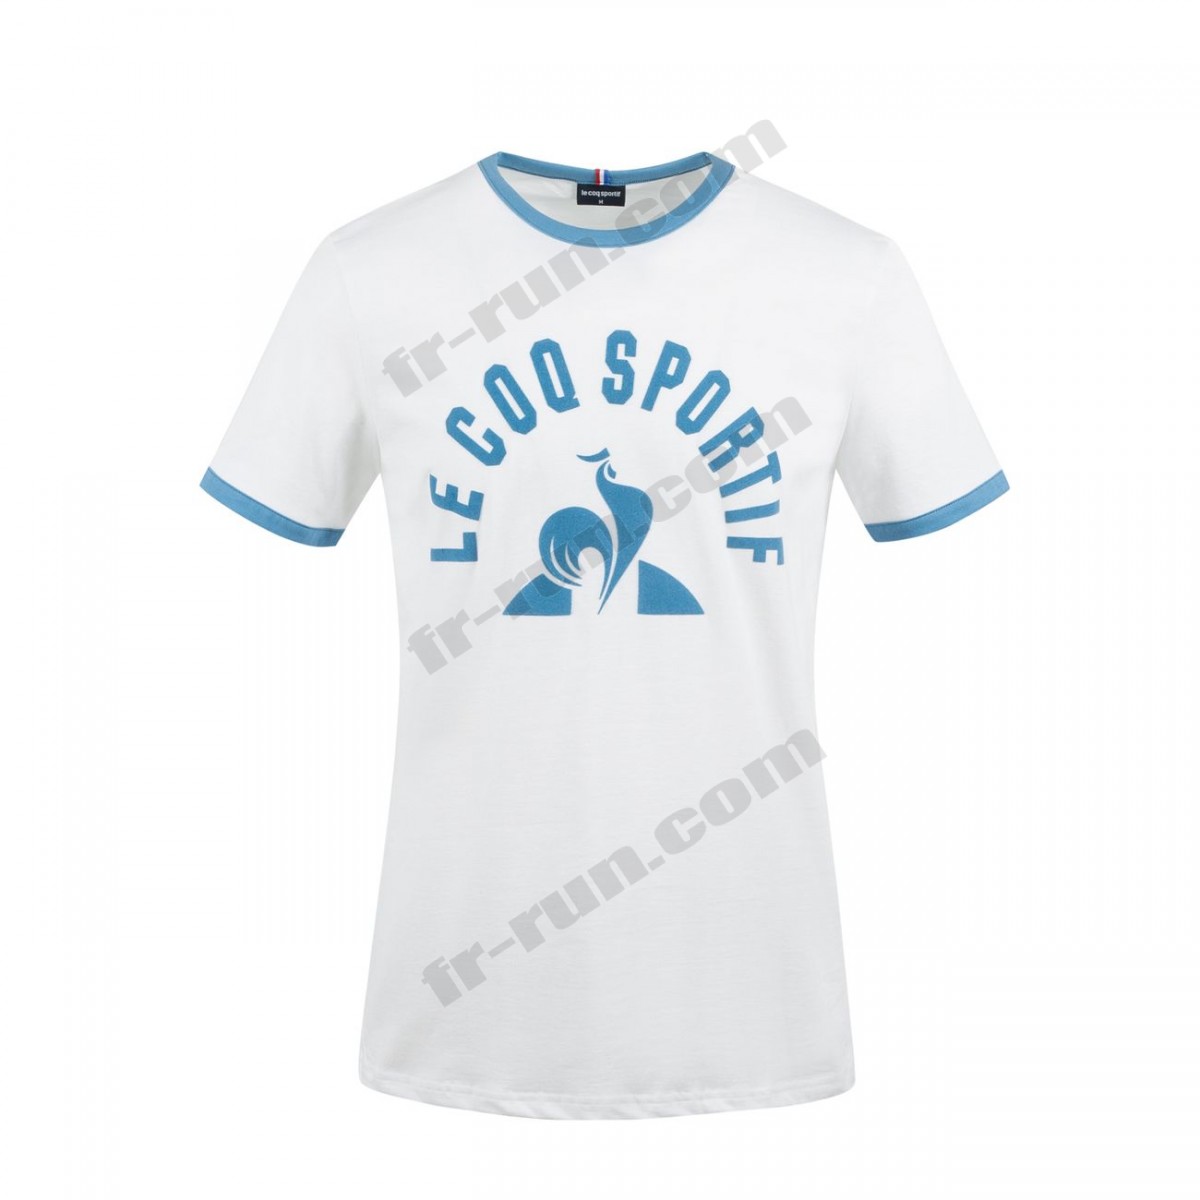 Le Coq Sportif/running homme LE COQ SPORTIF T-shirt ESSENTIELS Homme √ Nouveau style √ Soldes - -2